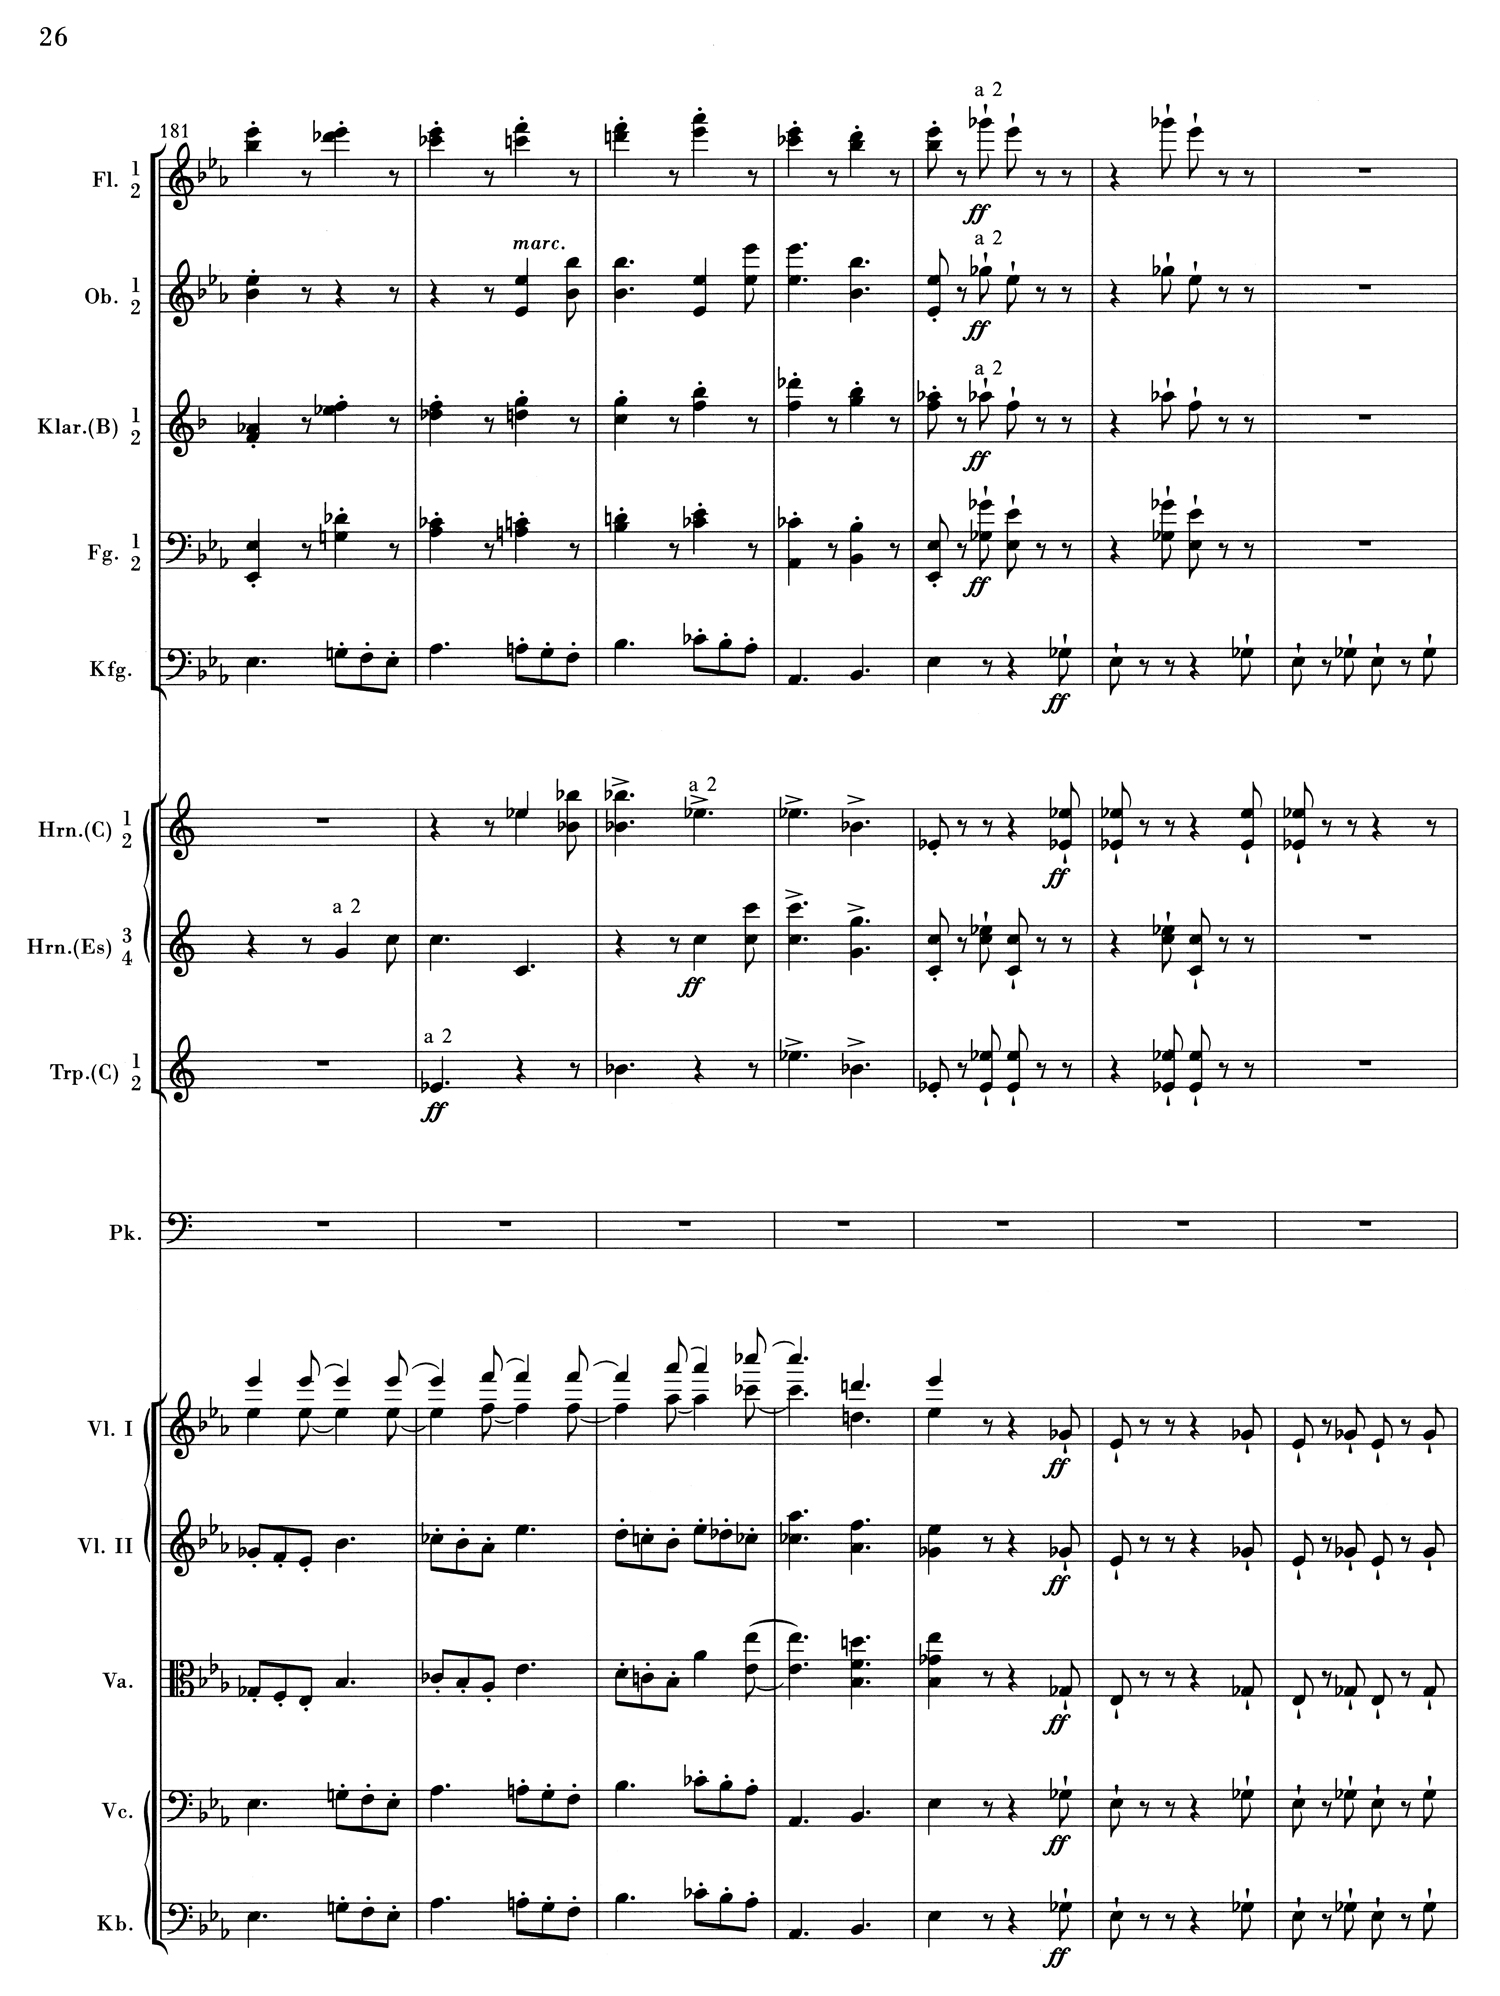 Brahms 1 Mvt 1 Score 4.jpg